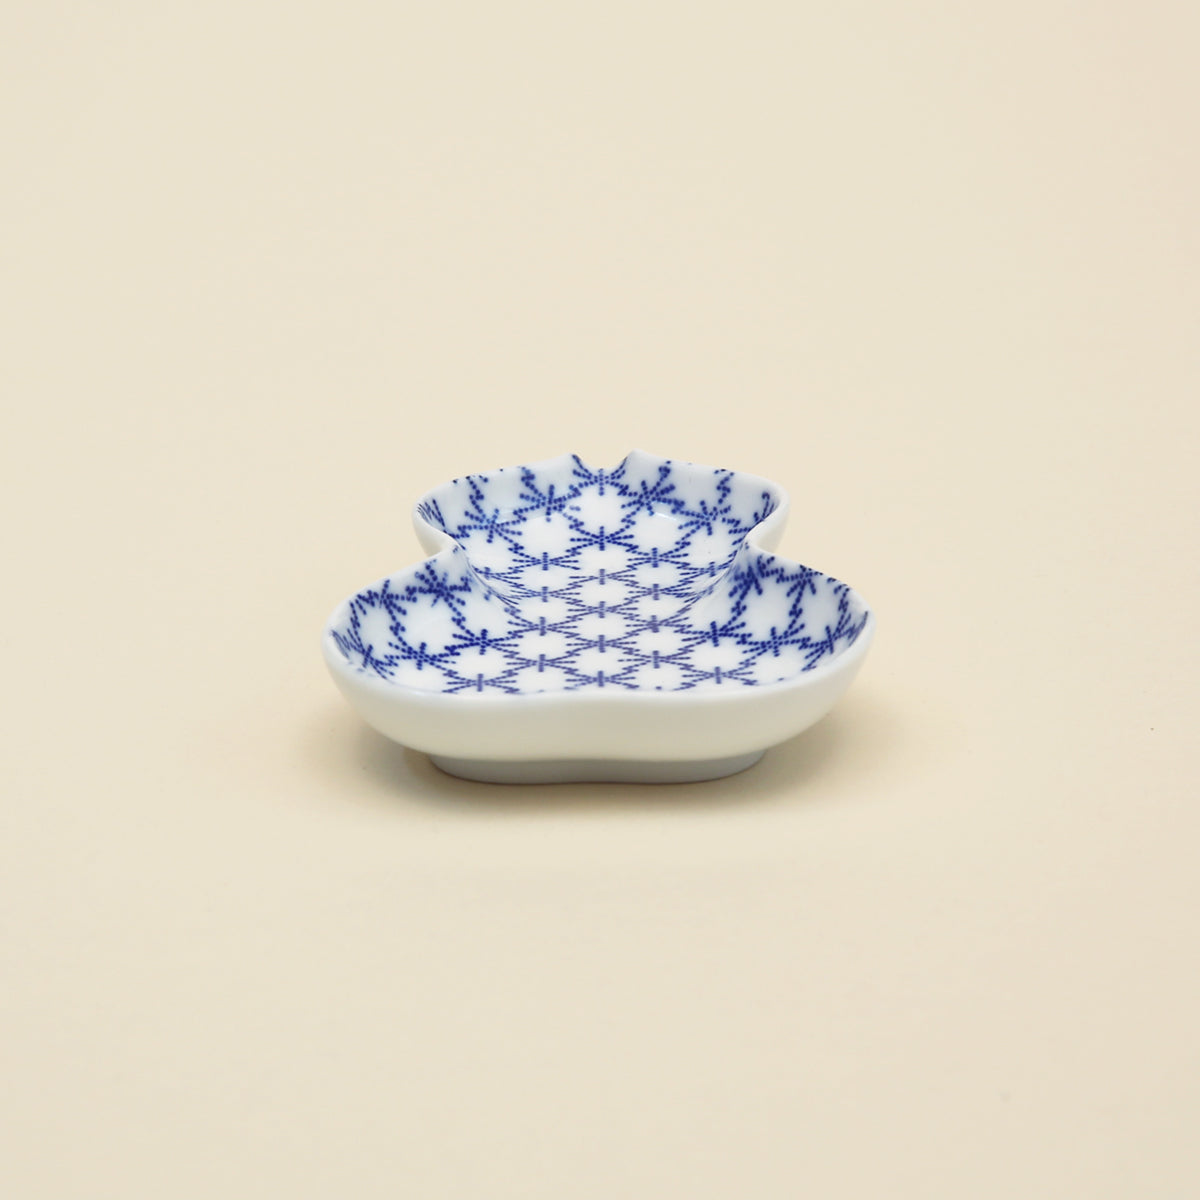 Small Ceramic Dish - Hyoutan